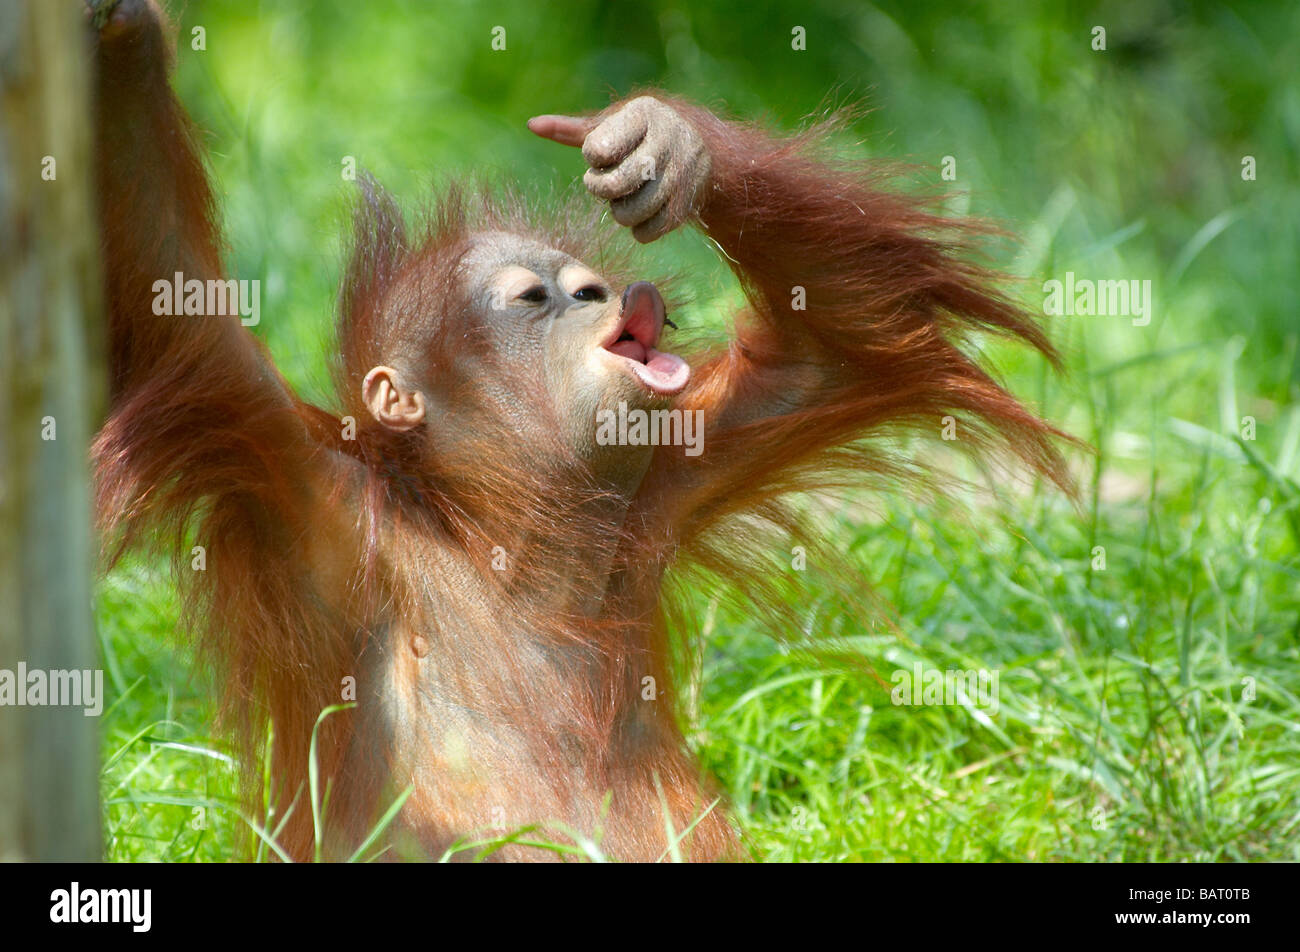 Carino baby orangutan giocando sull'erba Foto Stock